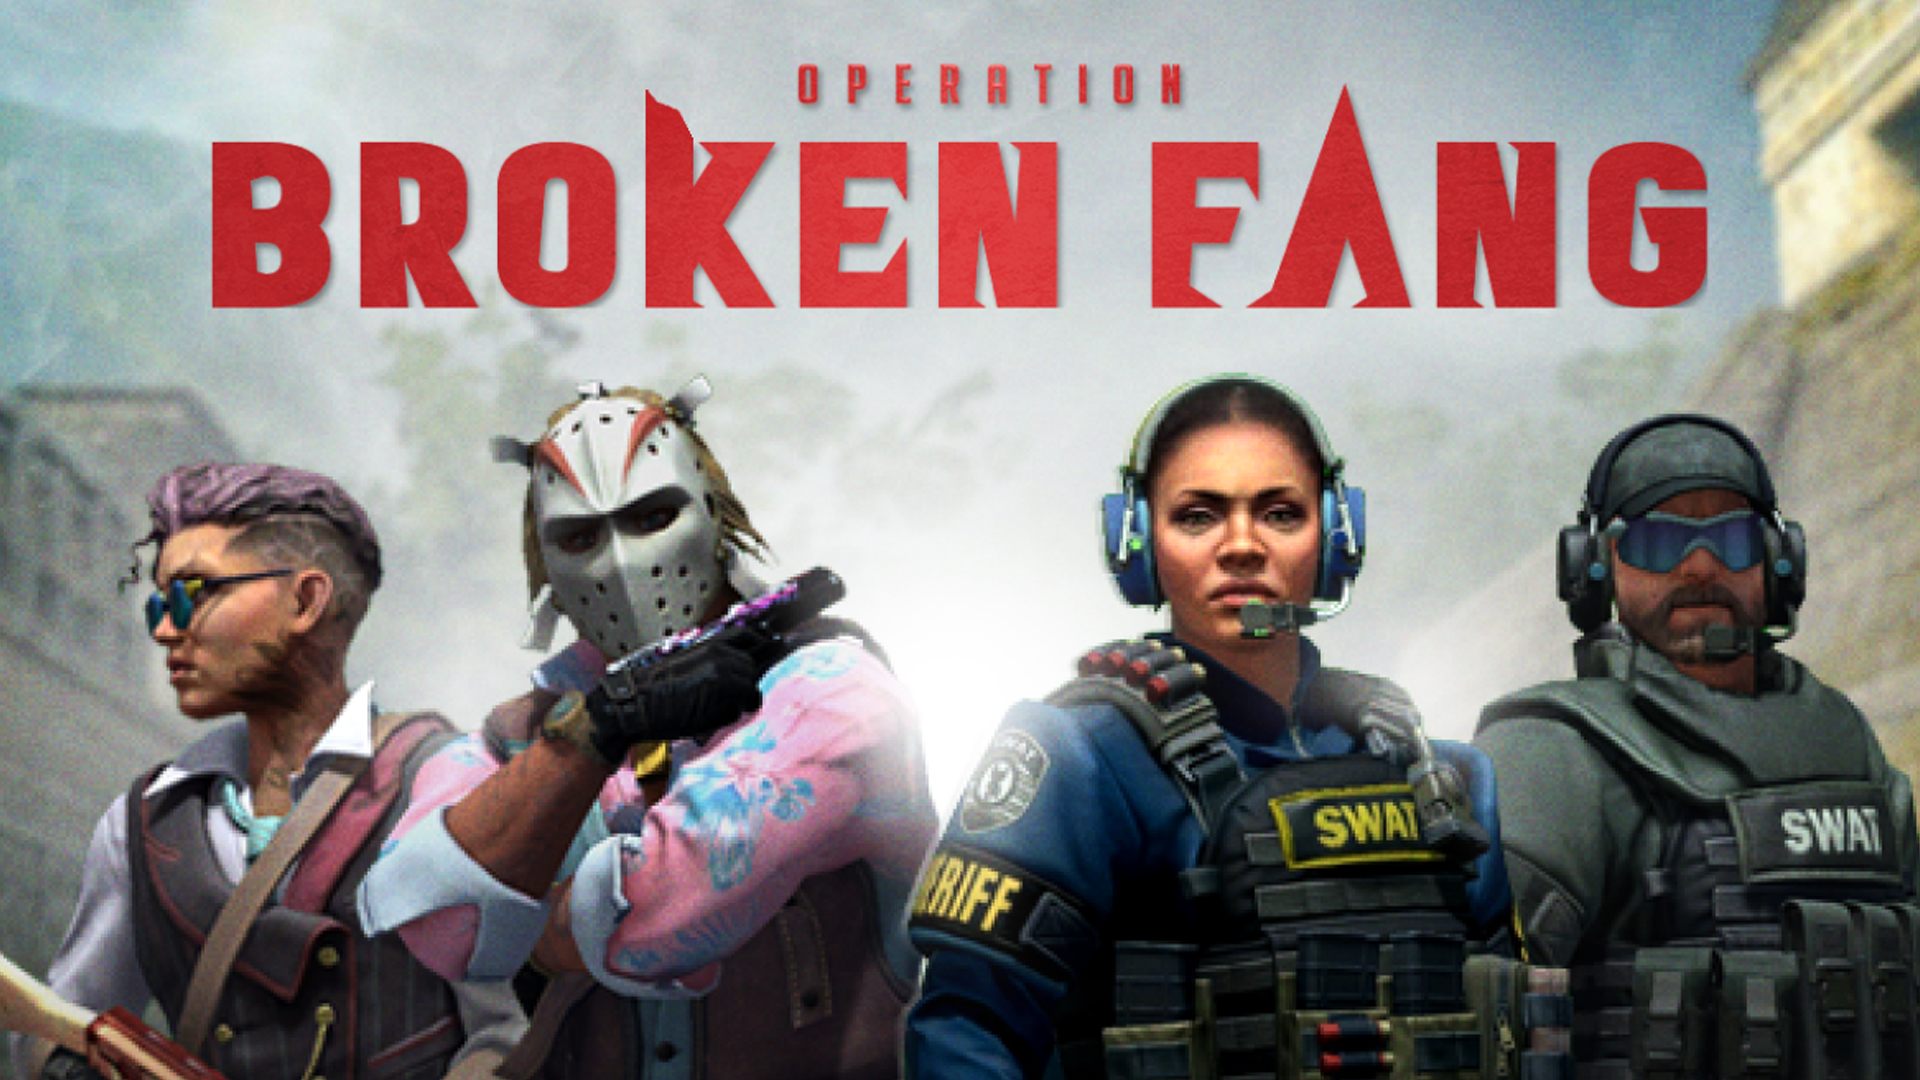 CS:GO Operation Broken Fang